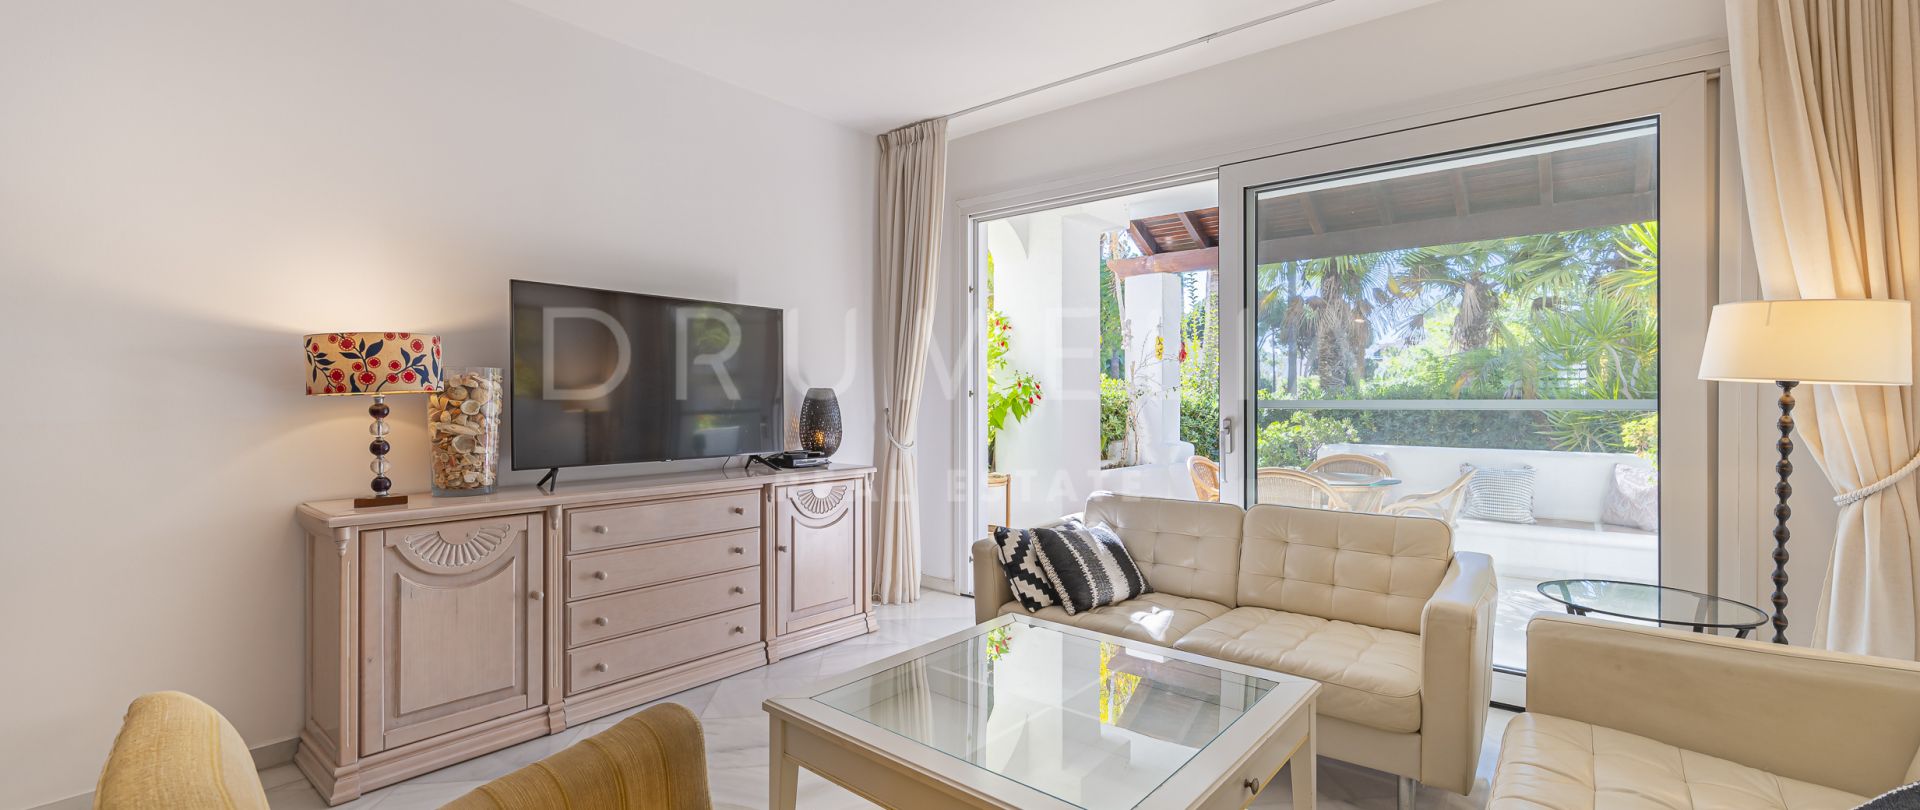 Apartamento con jardín a poca distancia de la playa en venta en Marbella Milla de Oro.